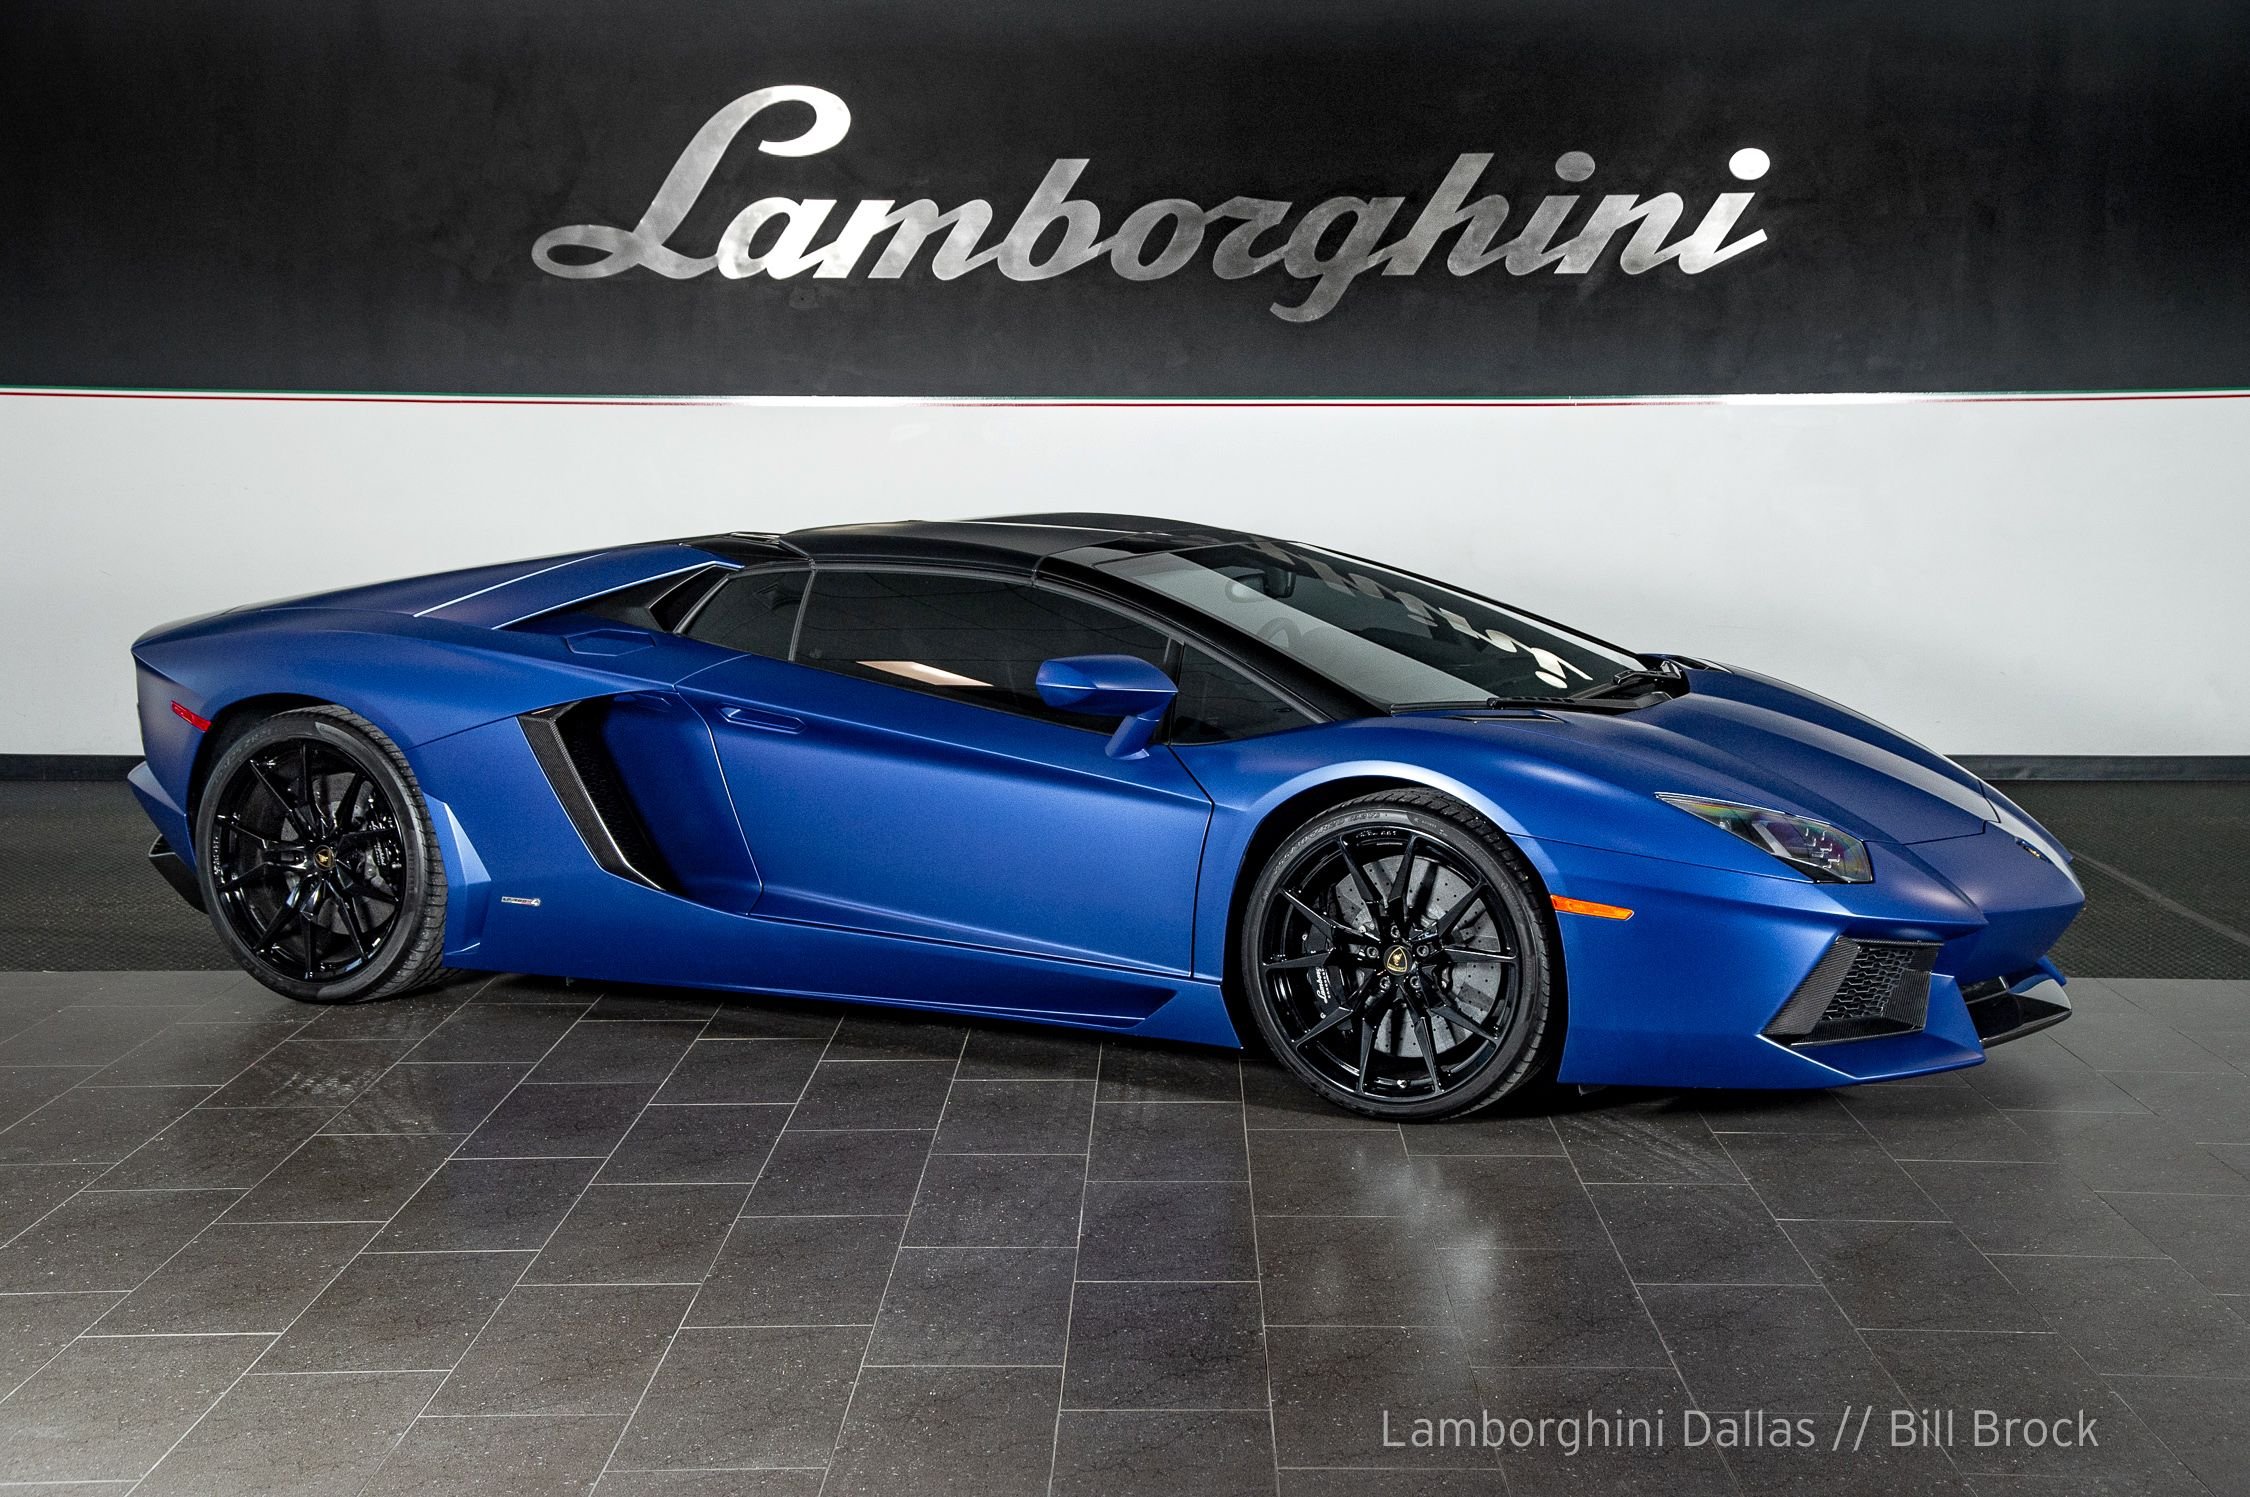 Used 2015 Lamborghini Aventador For Sale at LAMBORGHINI DALLAS 